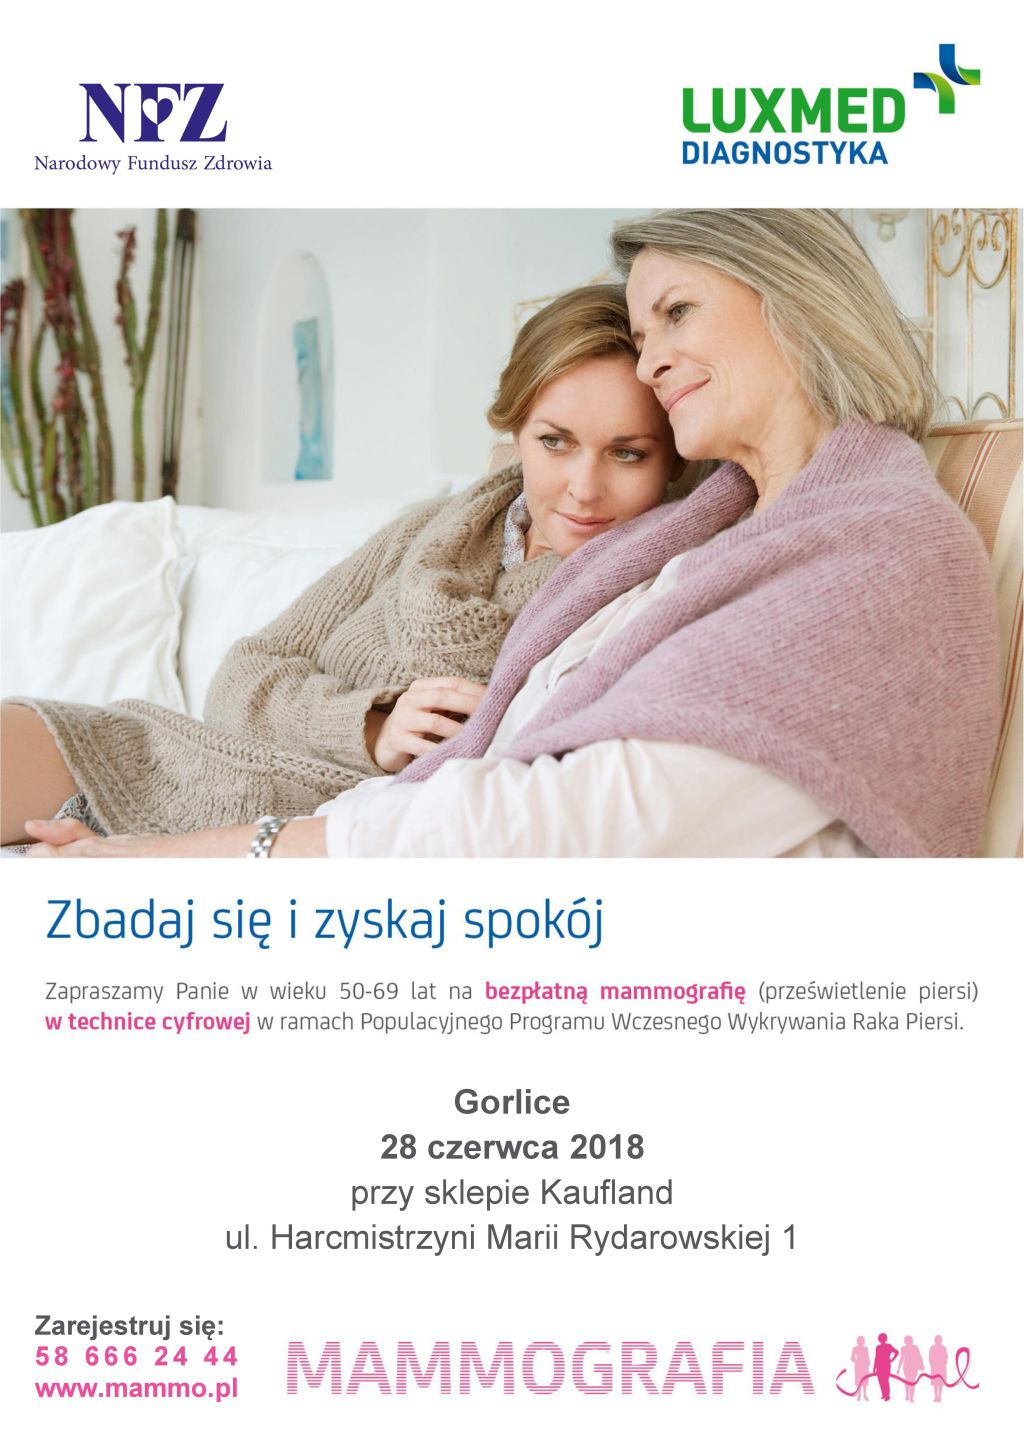 Bezpłatna mammografia w Gorlicach